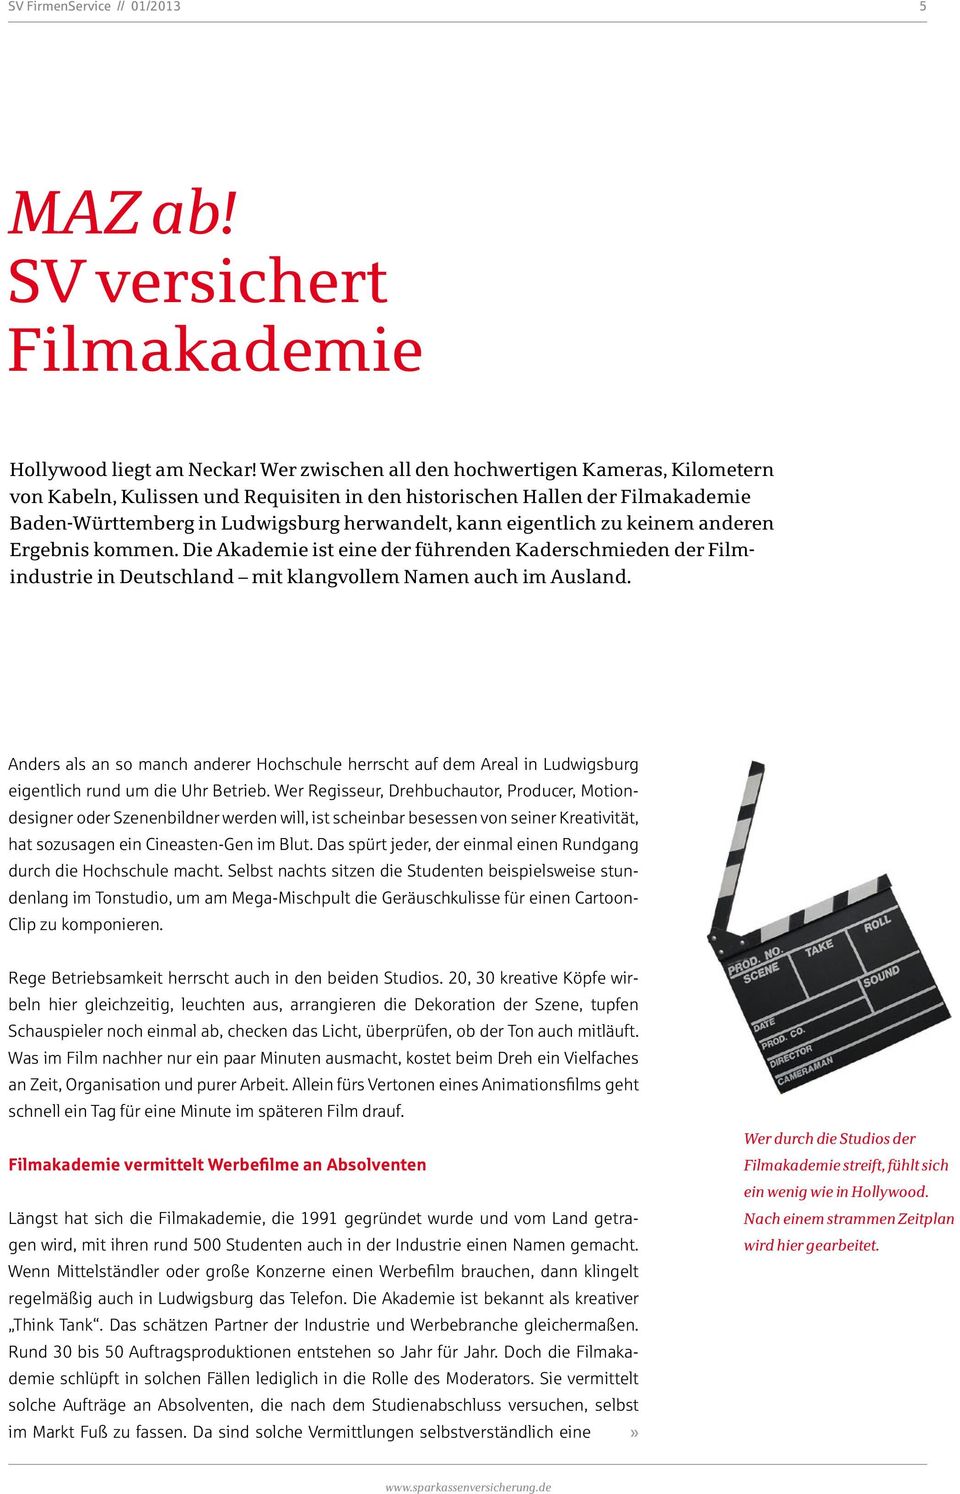 keinem anderen Ergebnis kommen. Die Akademie ist eine der führenden Kaderschmieden der Filmindustrie in Deutschland mit klangvollem Namen auch im Ausland.